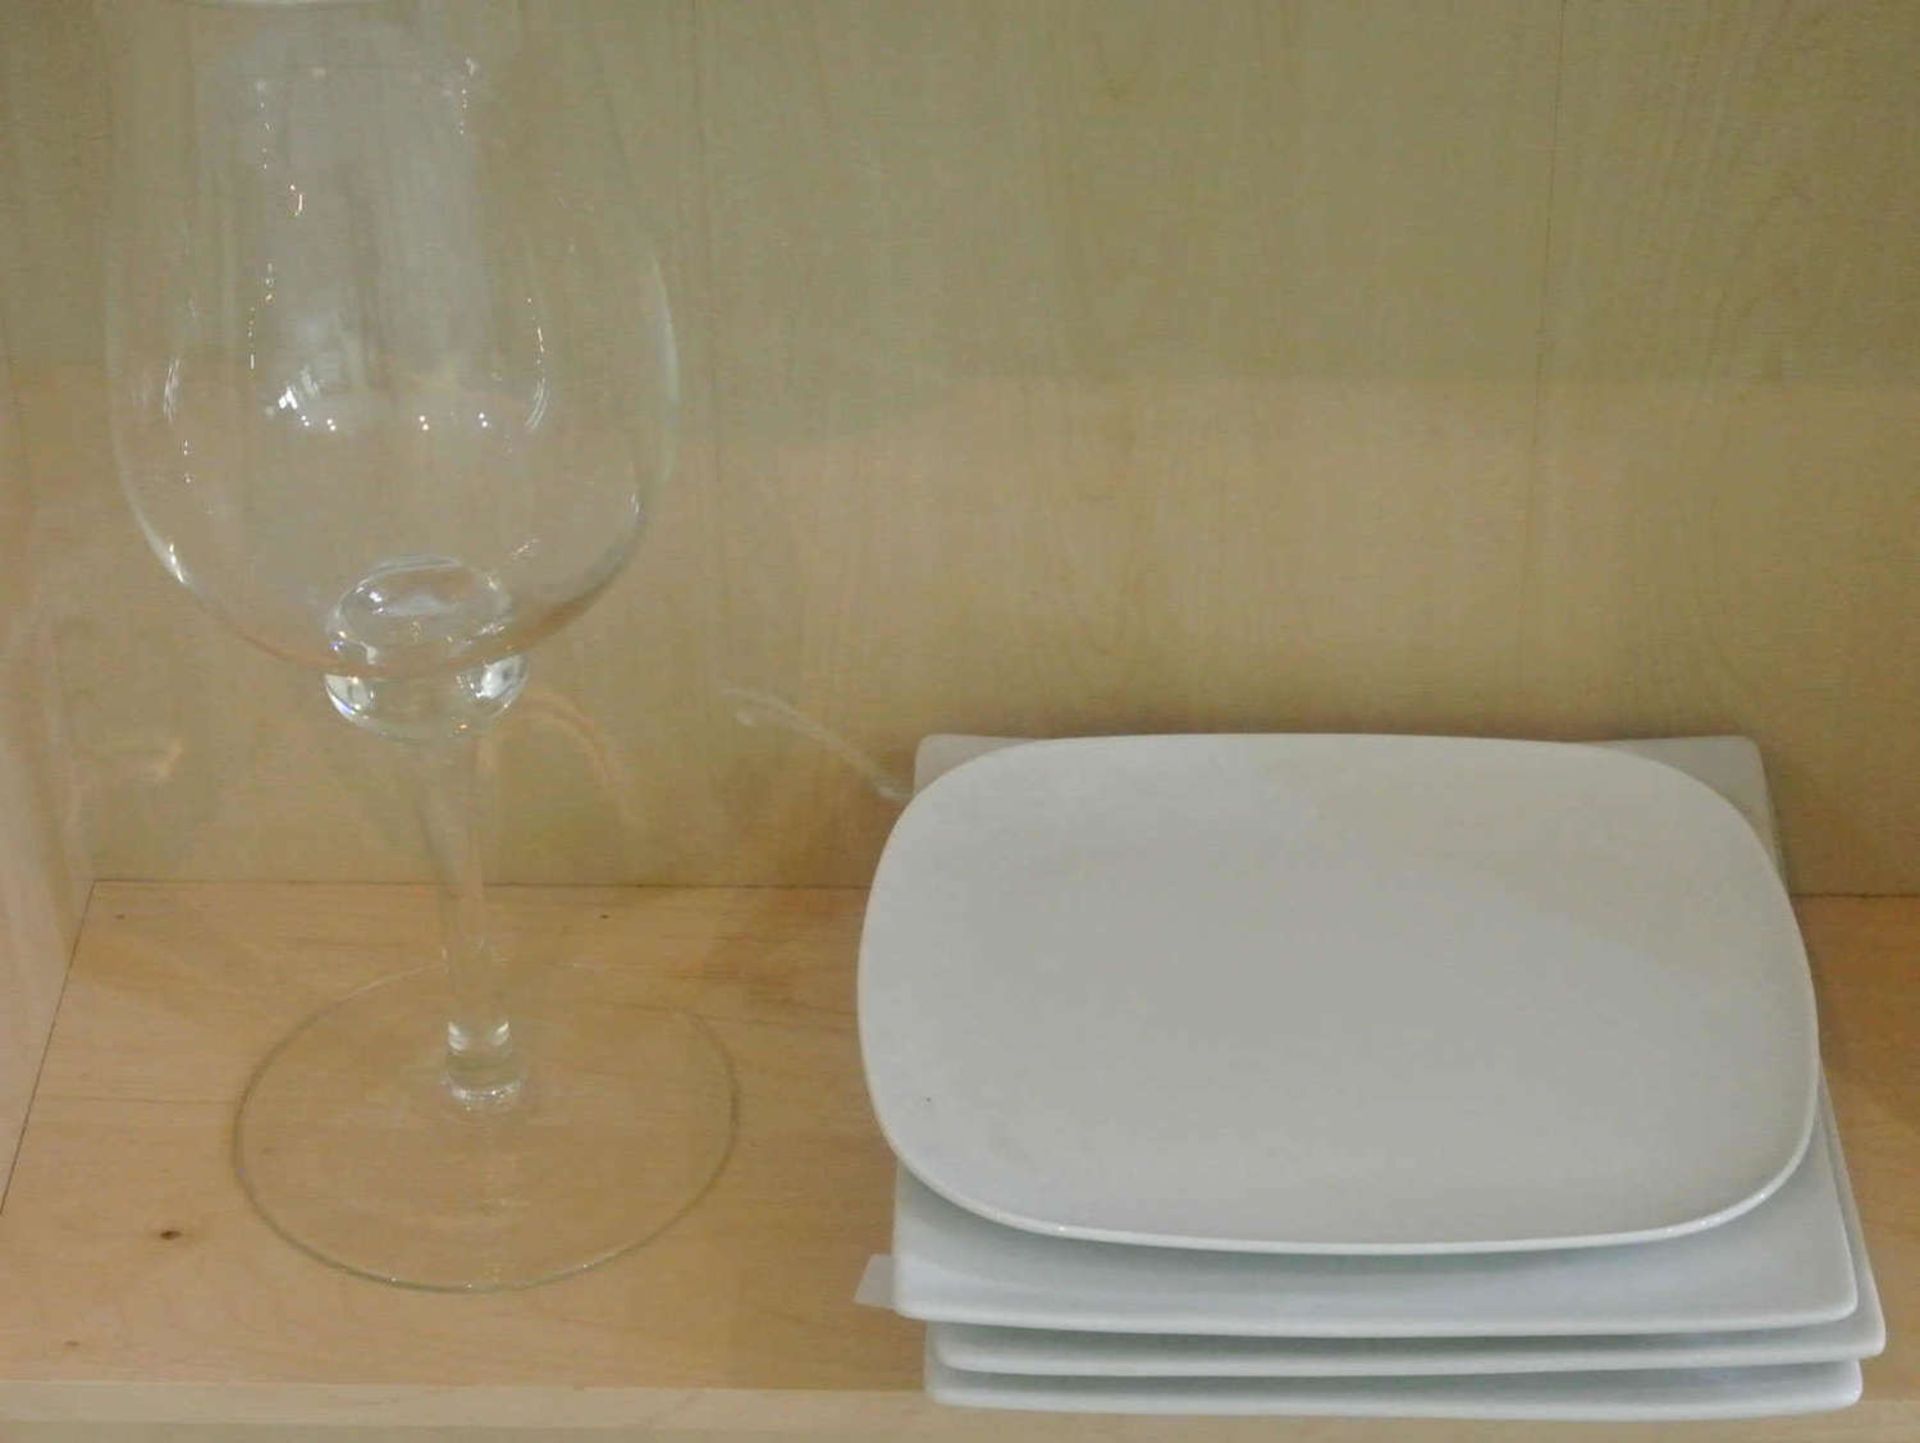 4 Teile Porzellan, bestehend aus 3 große rechteckige Vorlageteller, 1 Platte, sowie 1 große